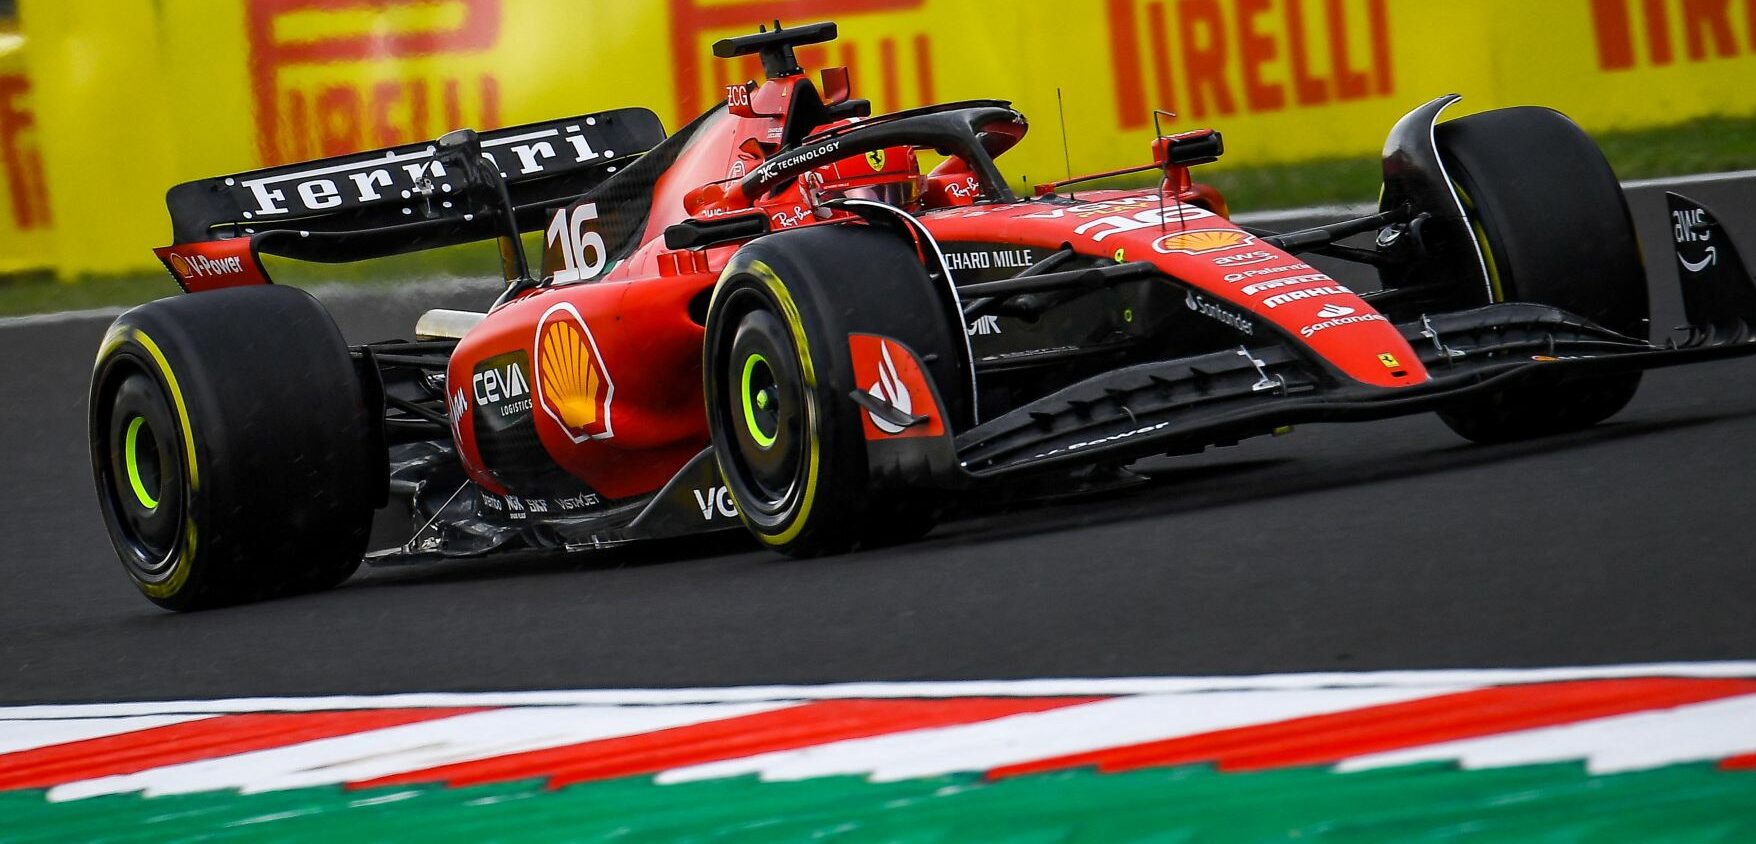 Ferrari dita o ritmo nos treinos livres para o GP da França de F1